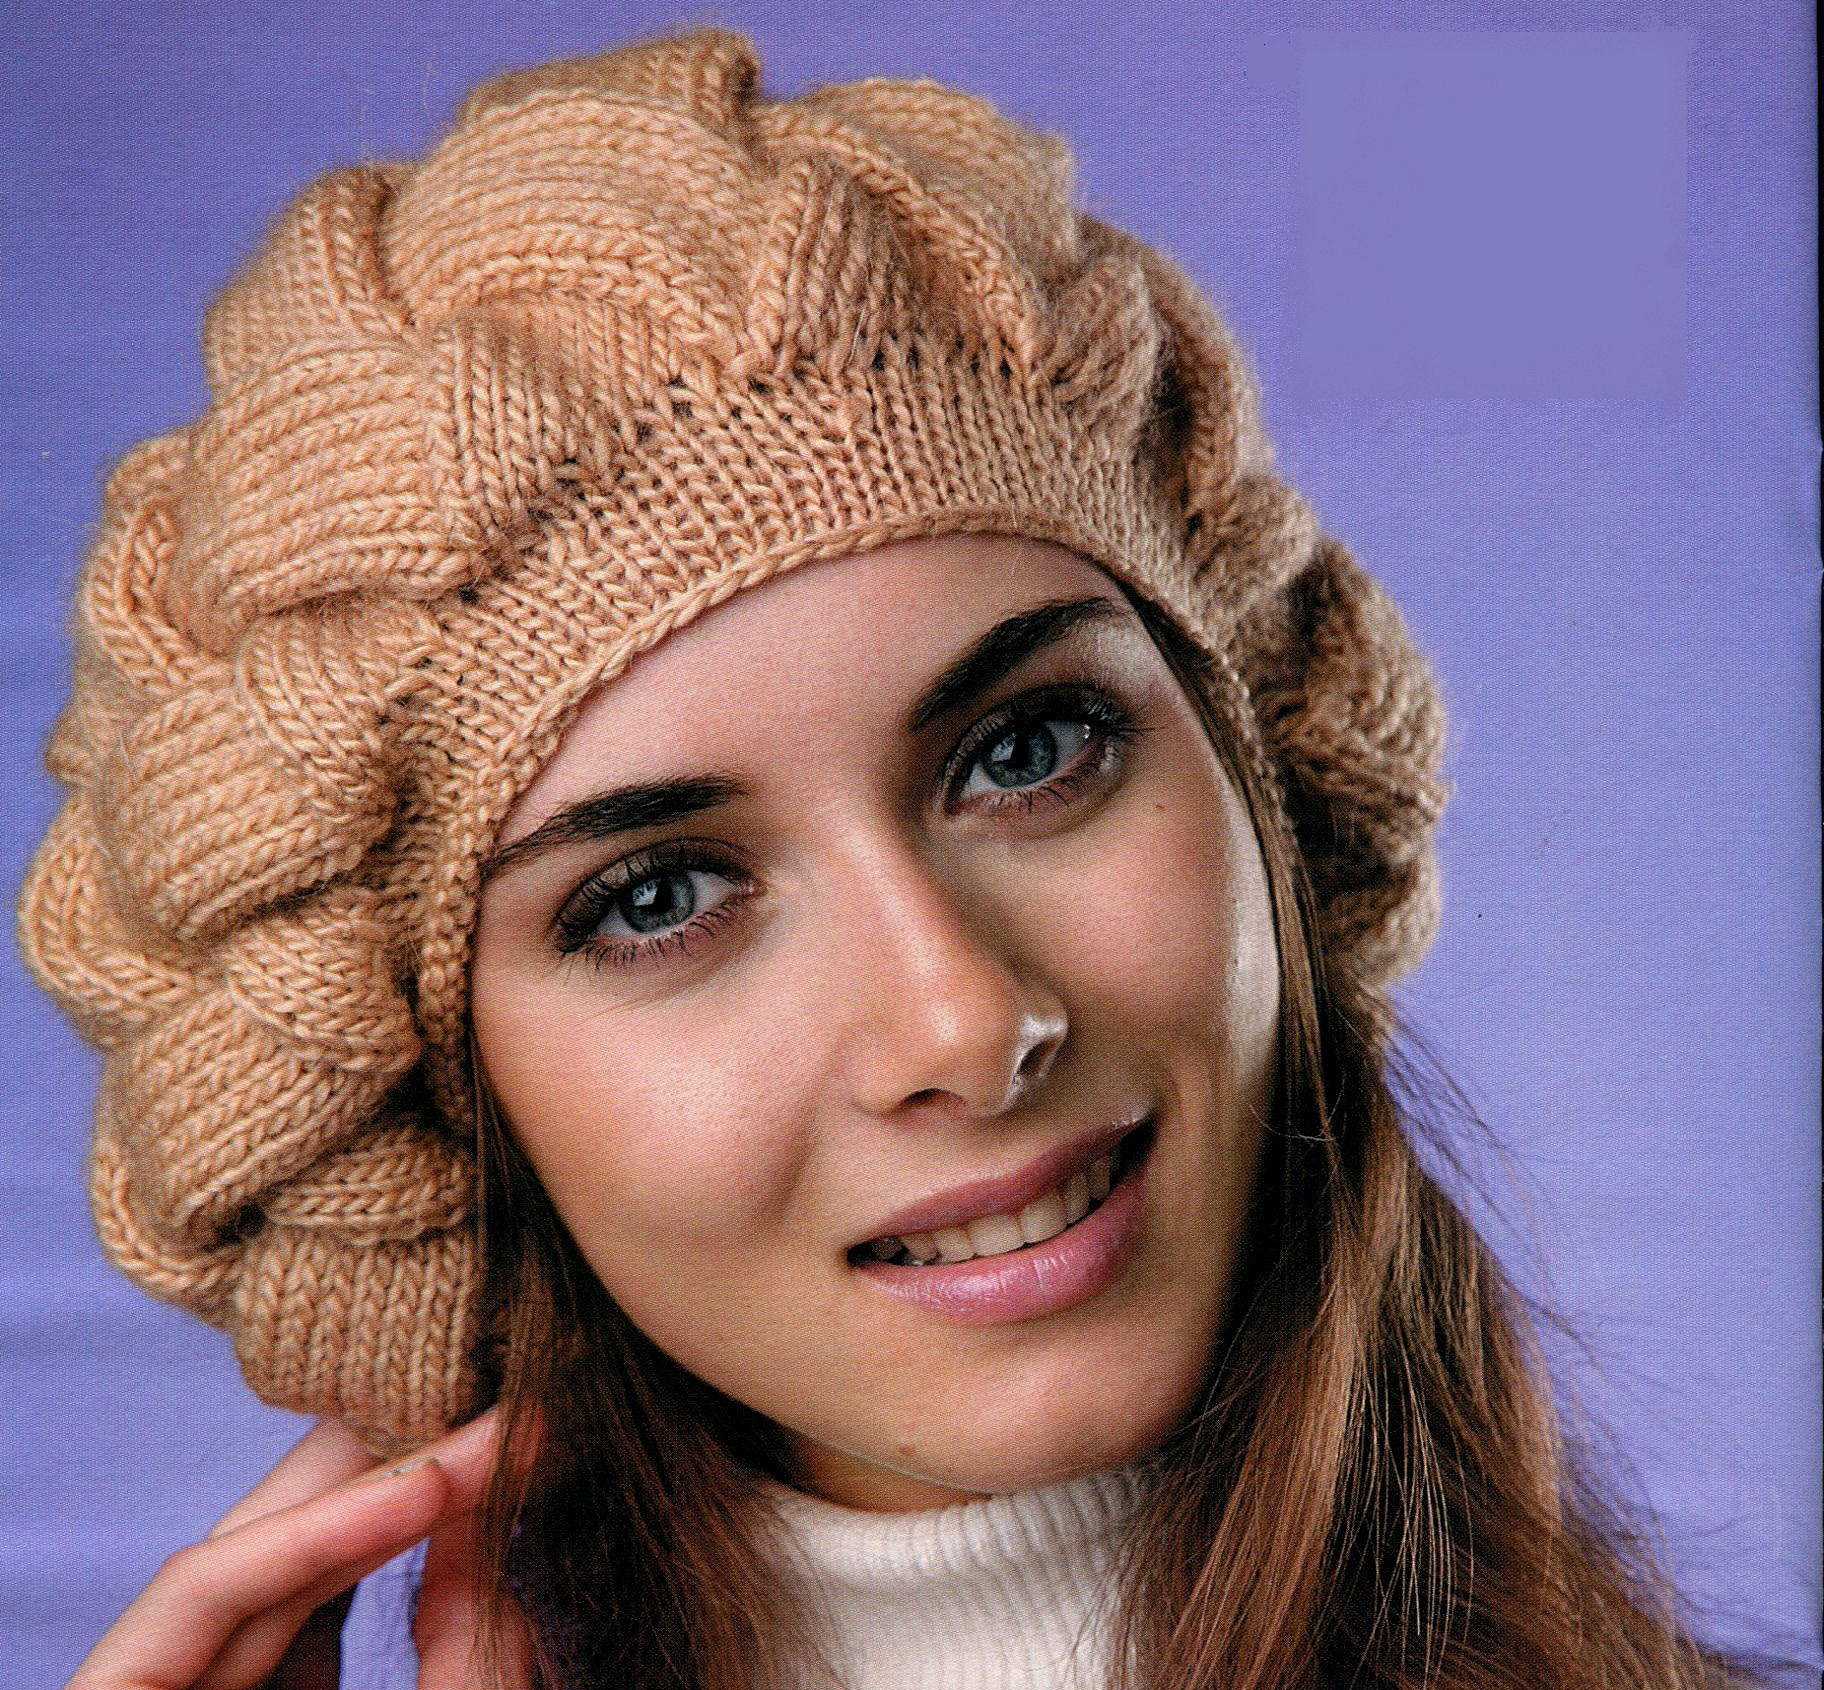 Связать шапку спицами для женщины новые модели